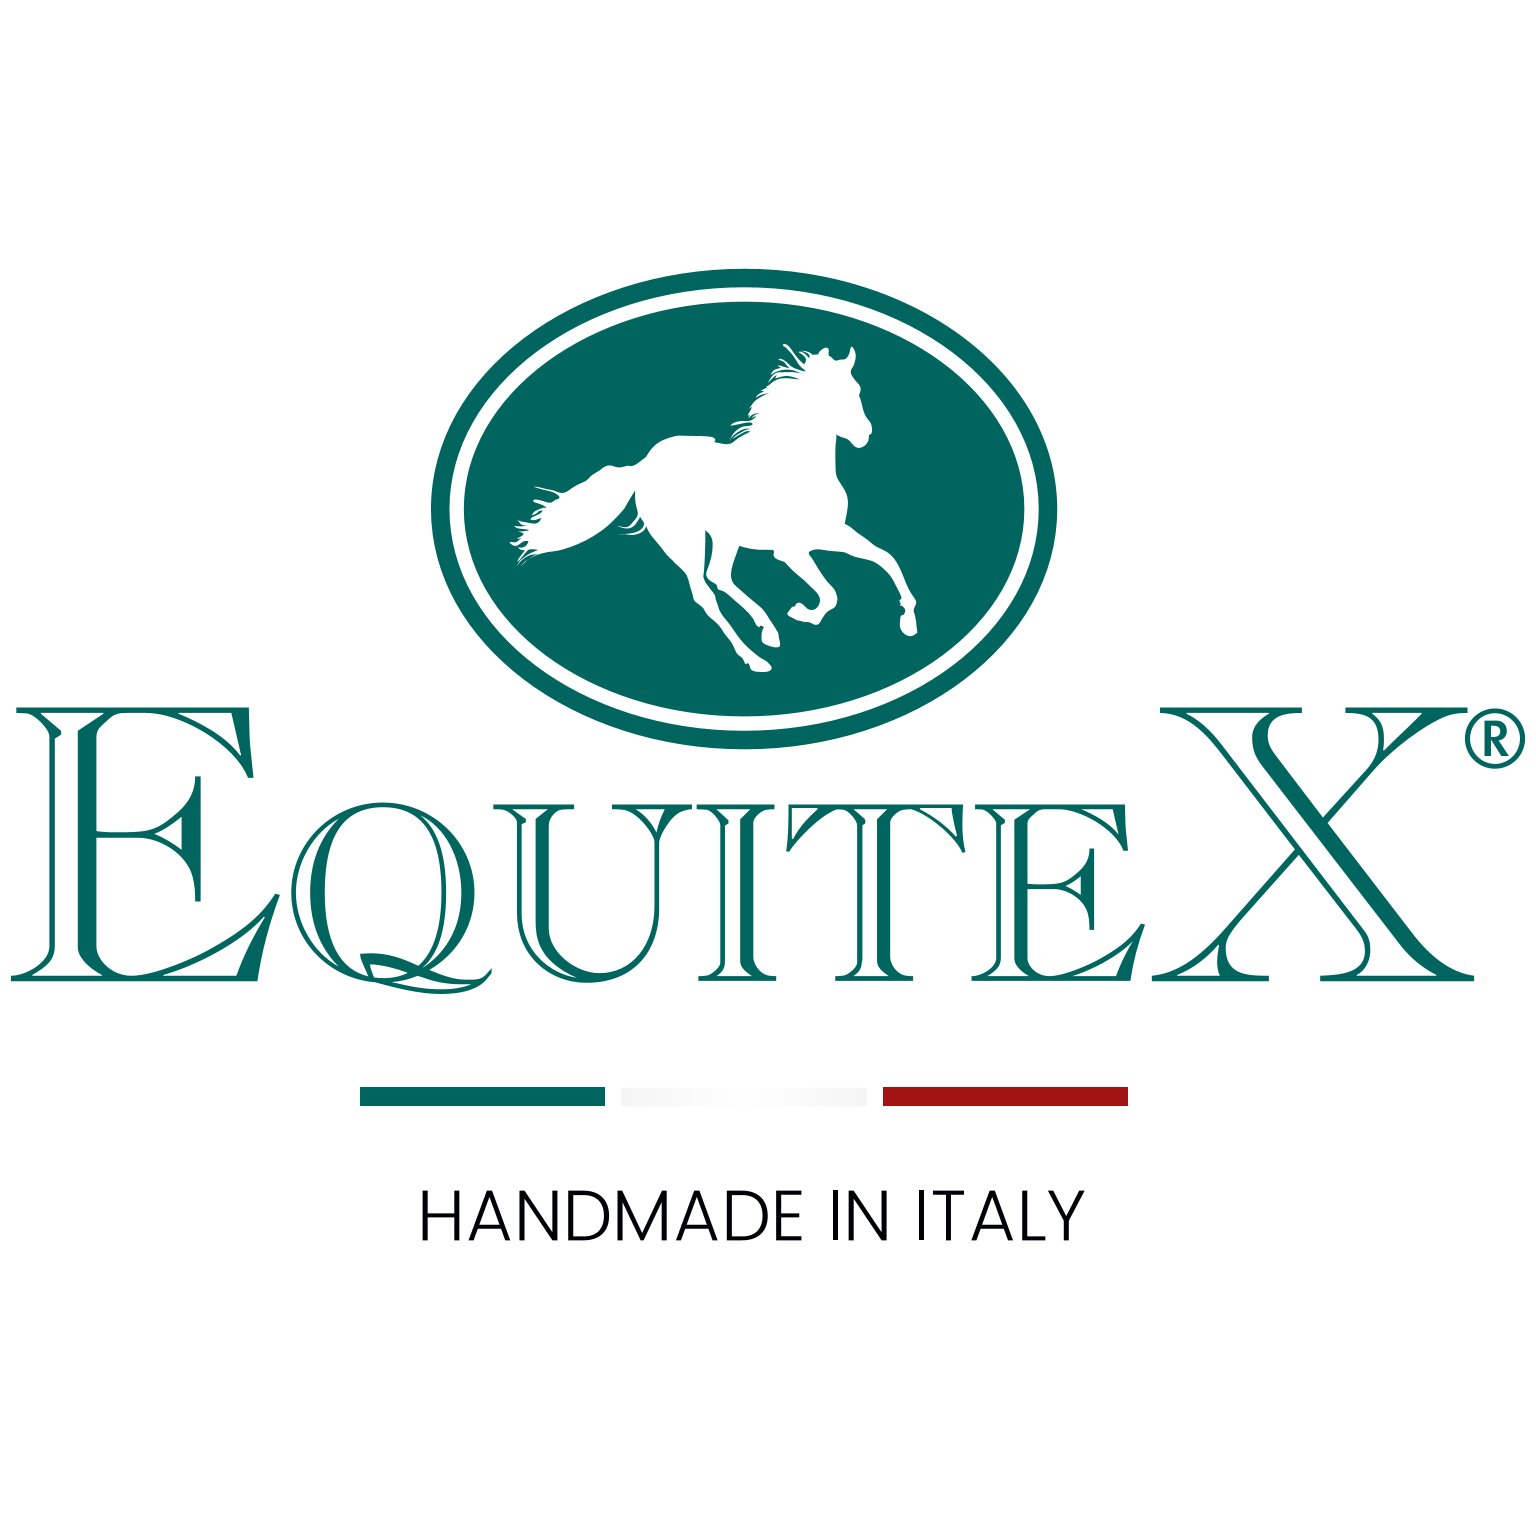 EQUITEX Logo farbing positiv handmade in Italy